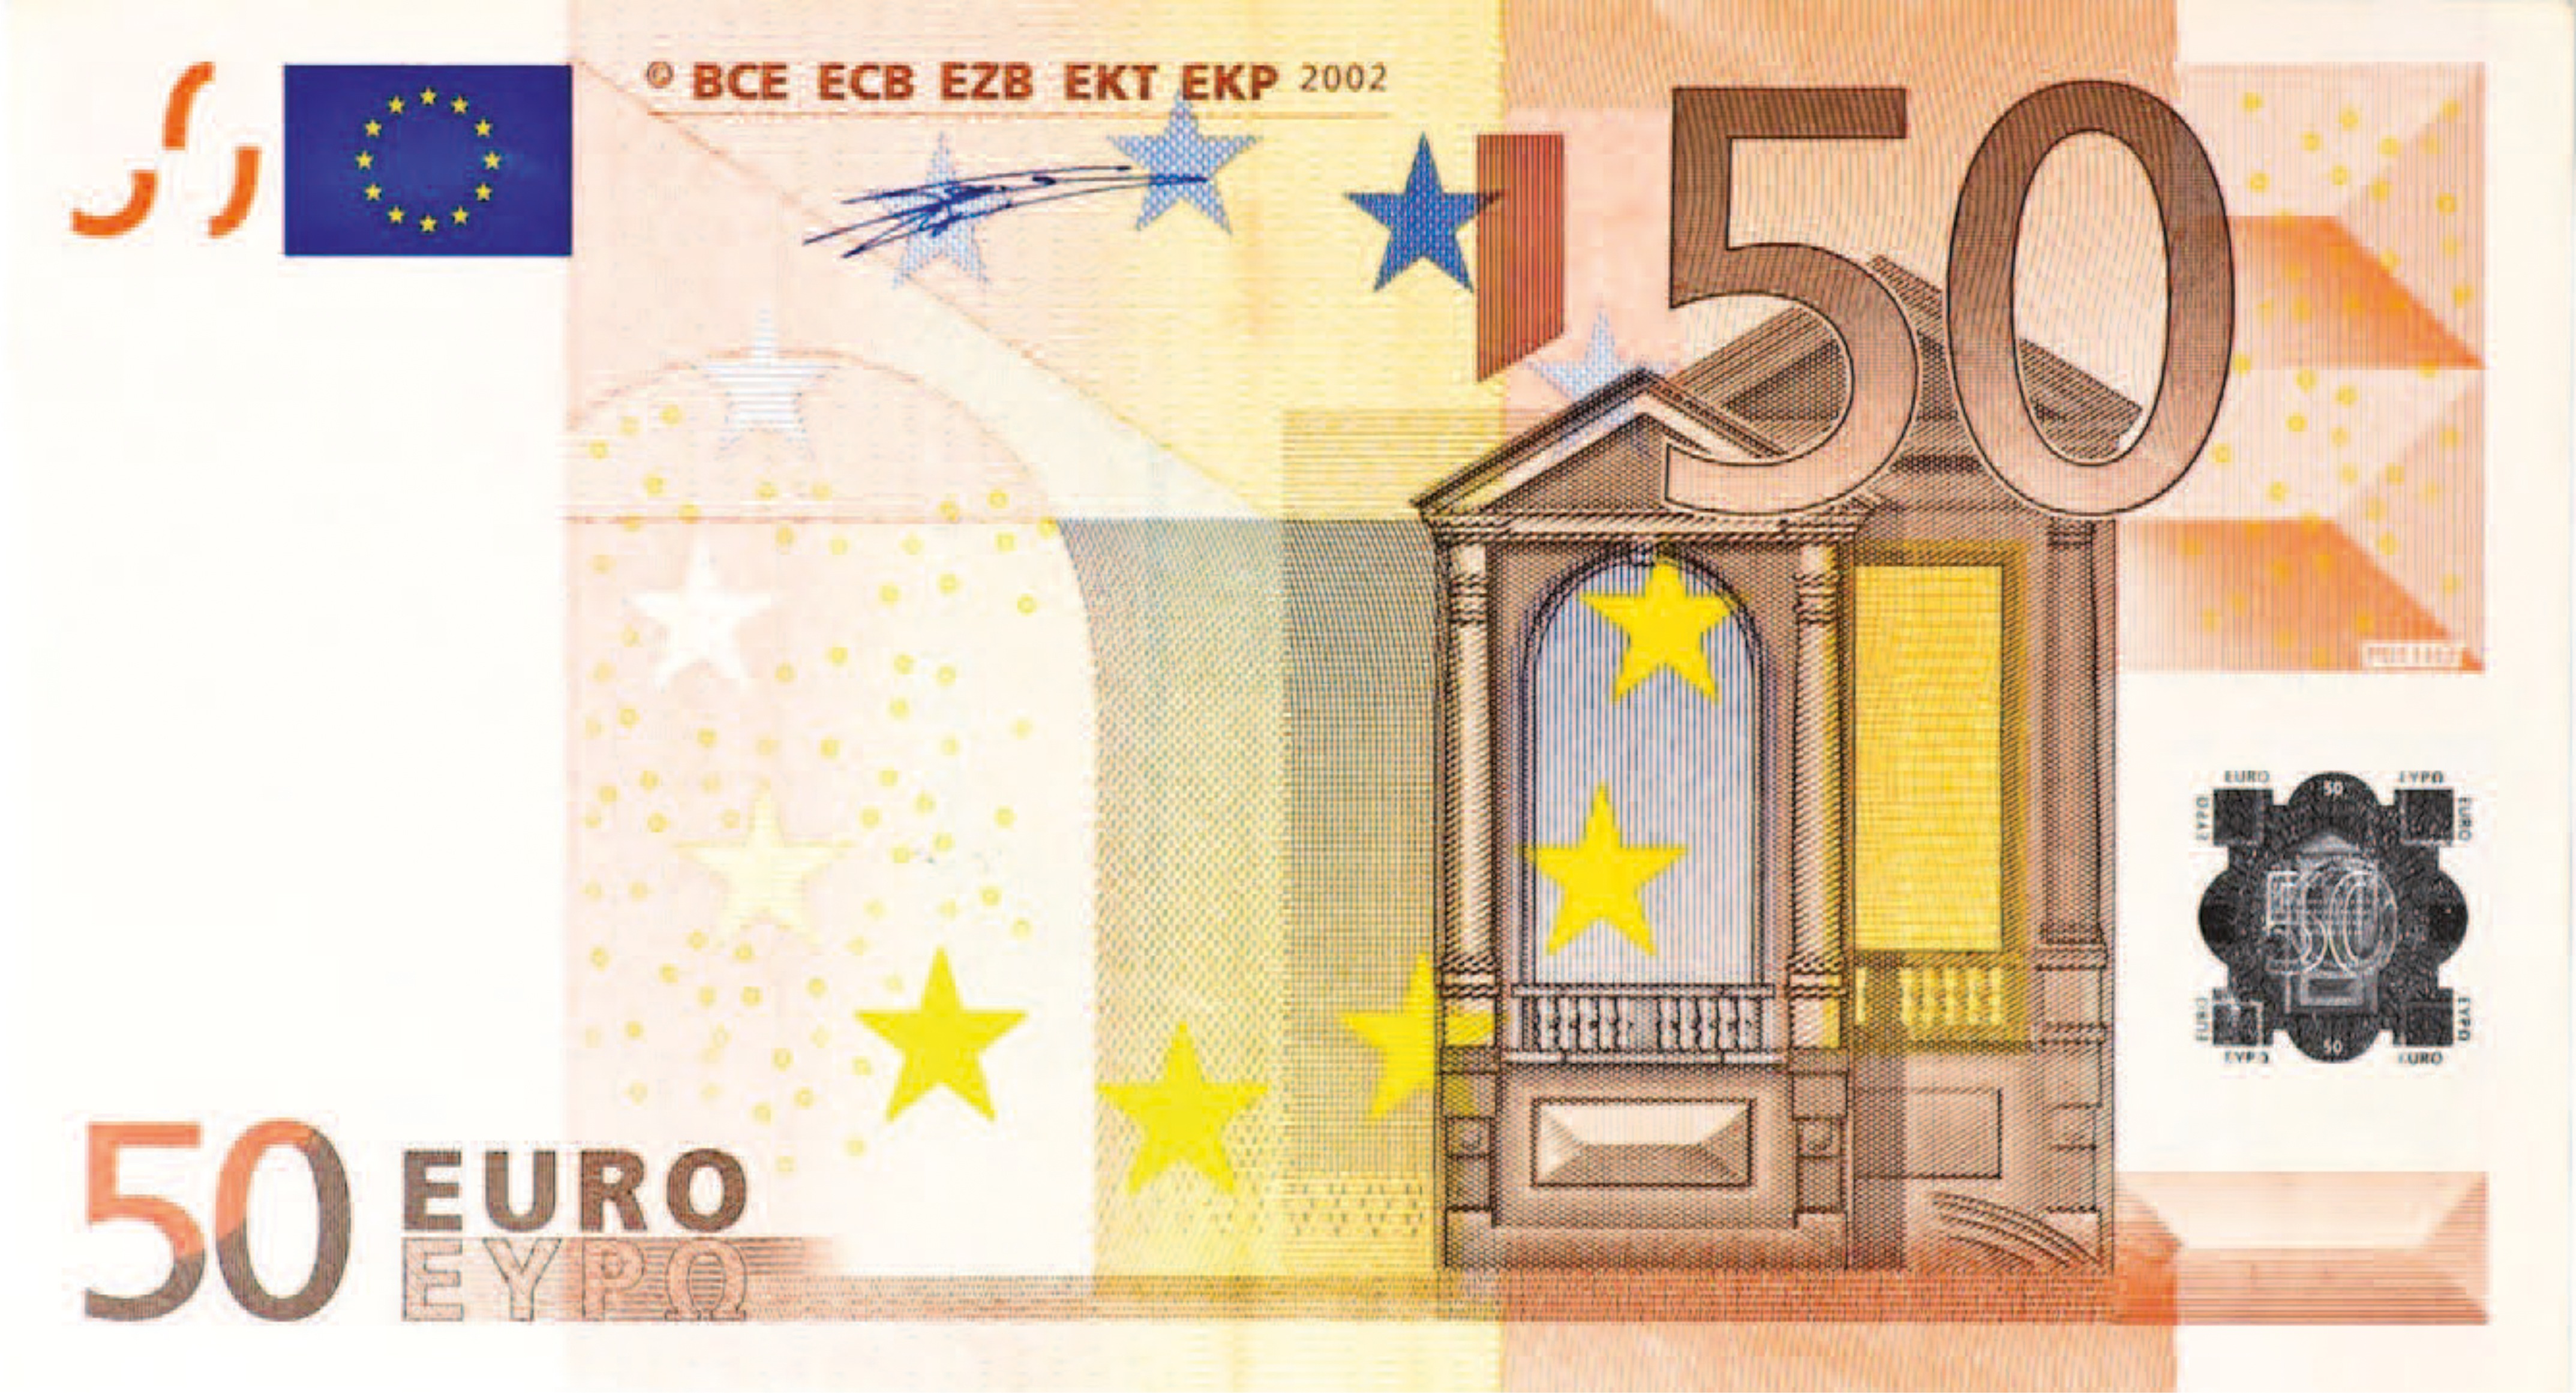 50 dollars euros